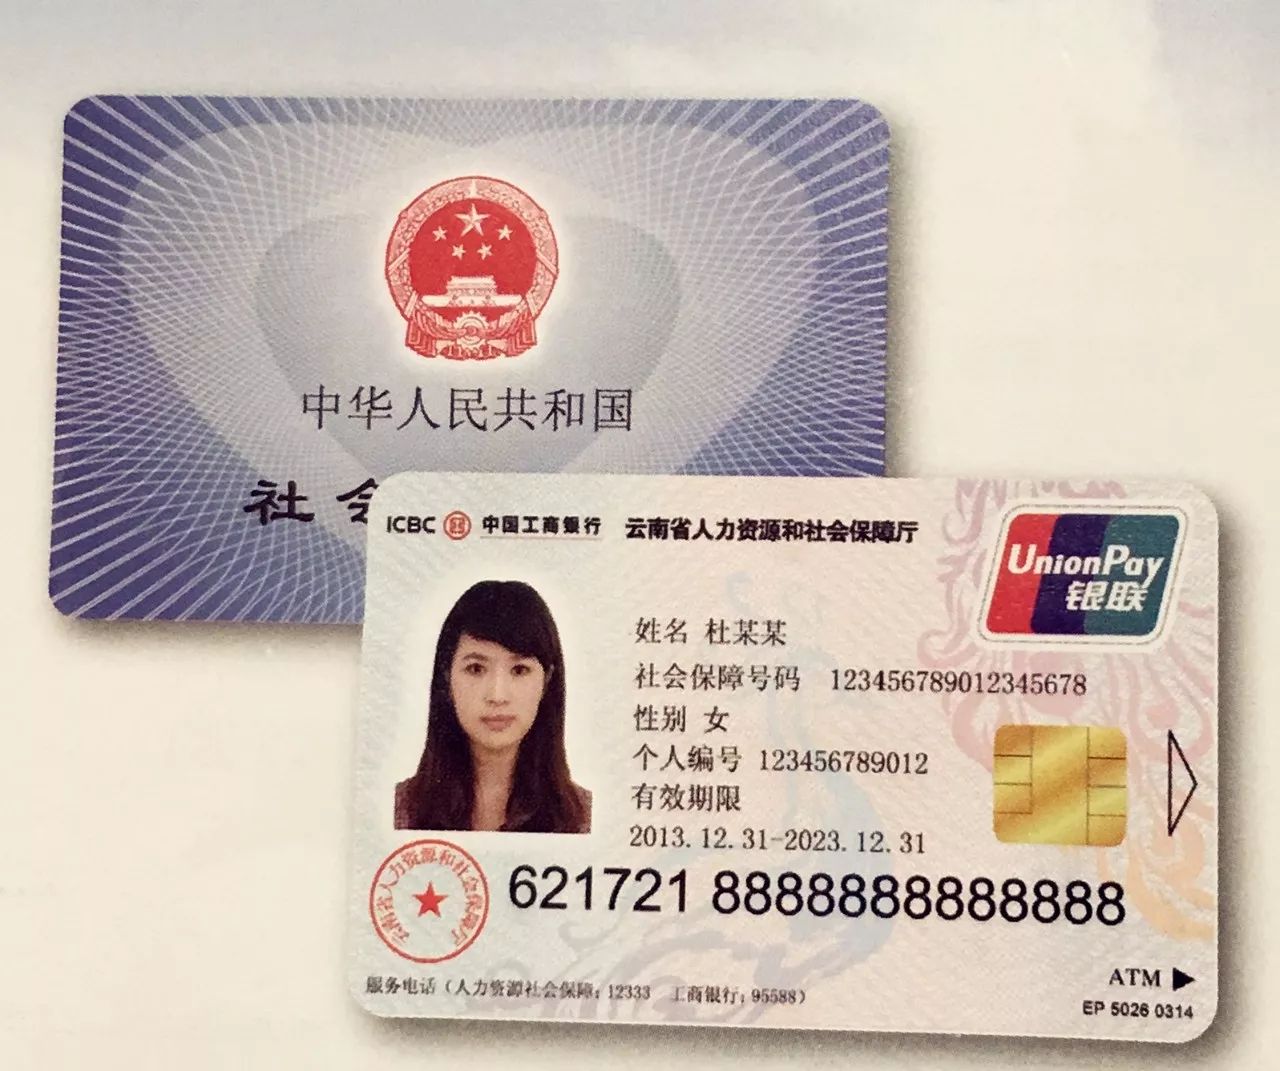 今天起,丽江人又多了一张拥有社会保障功能的银行卡